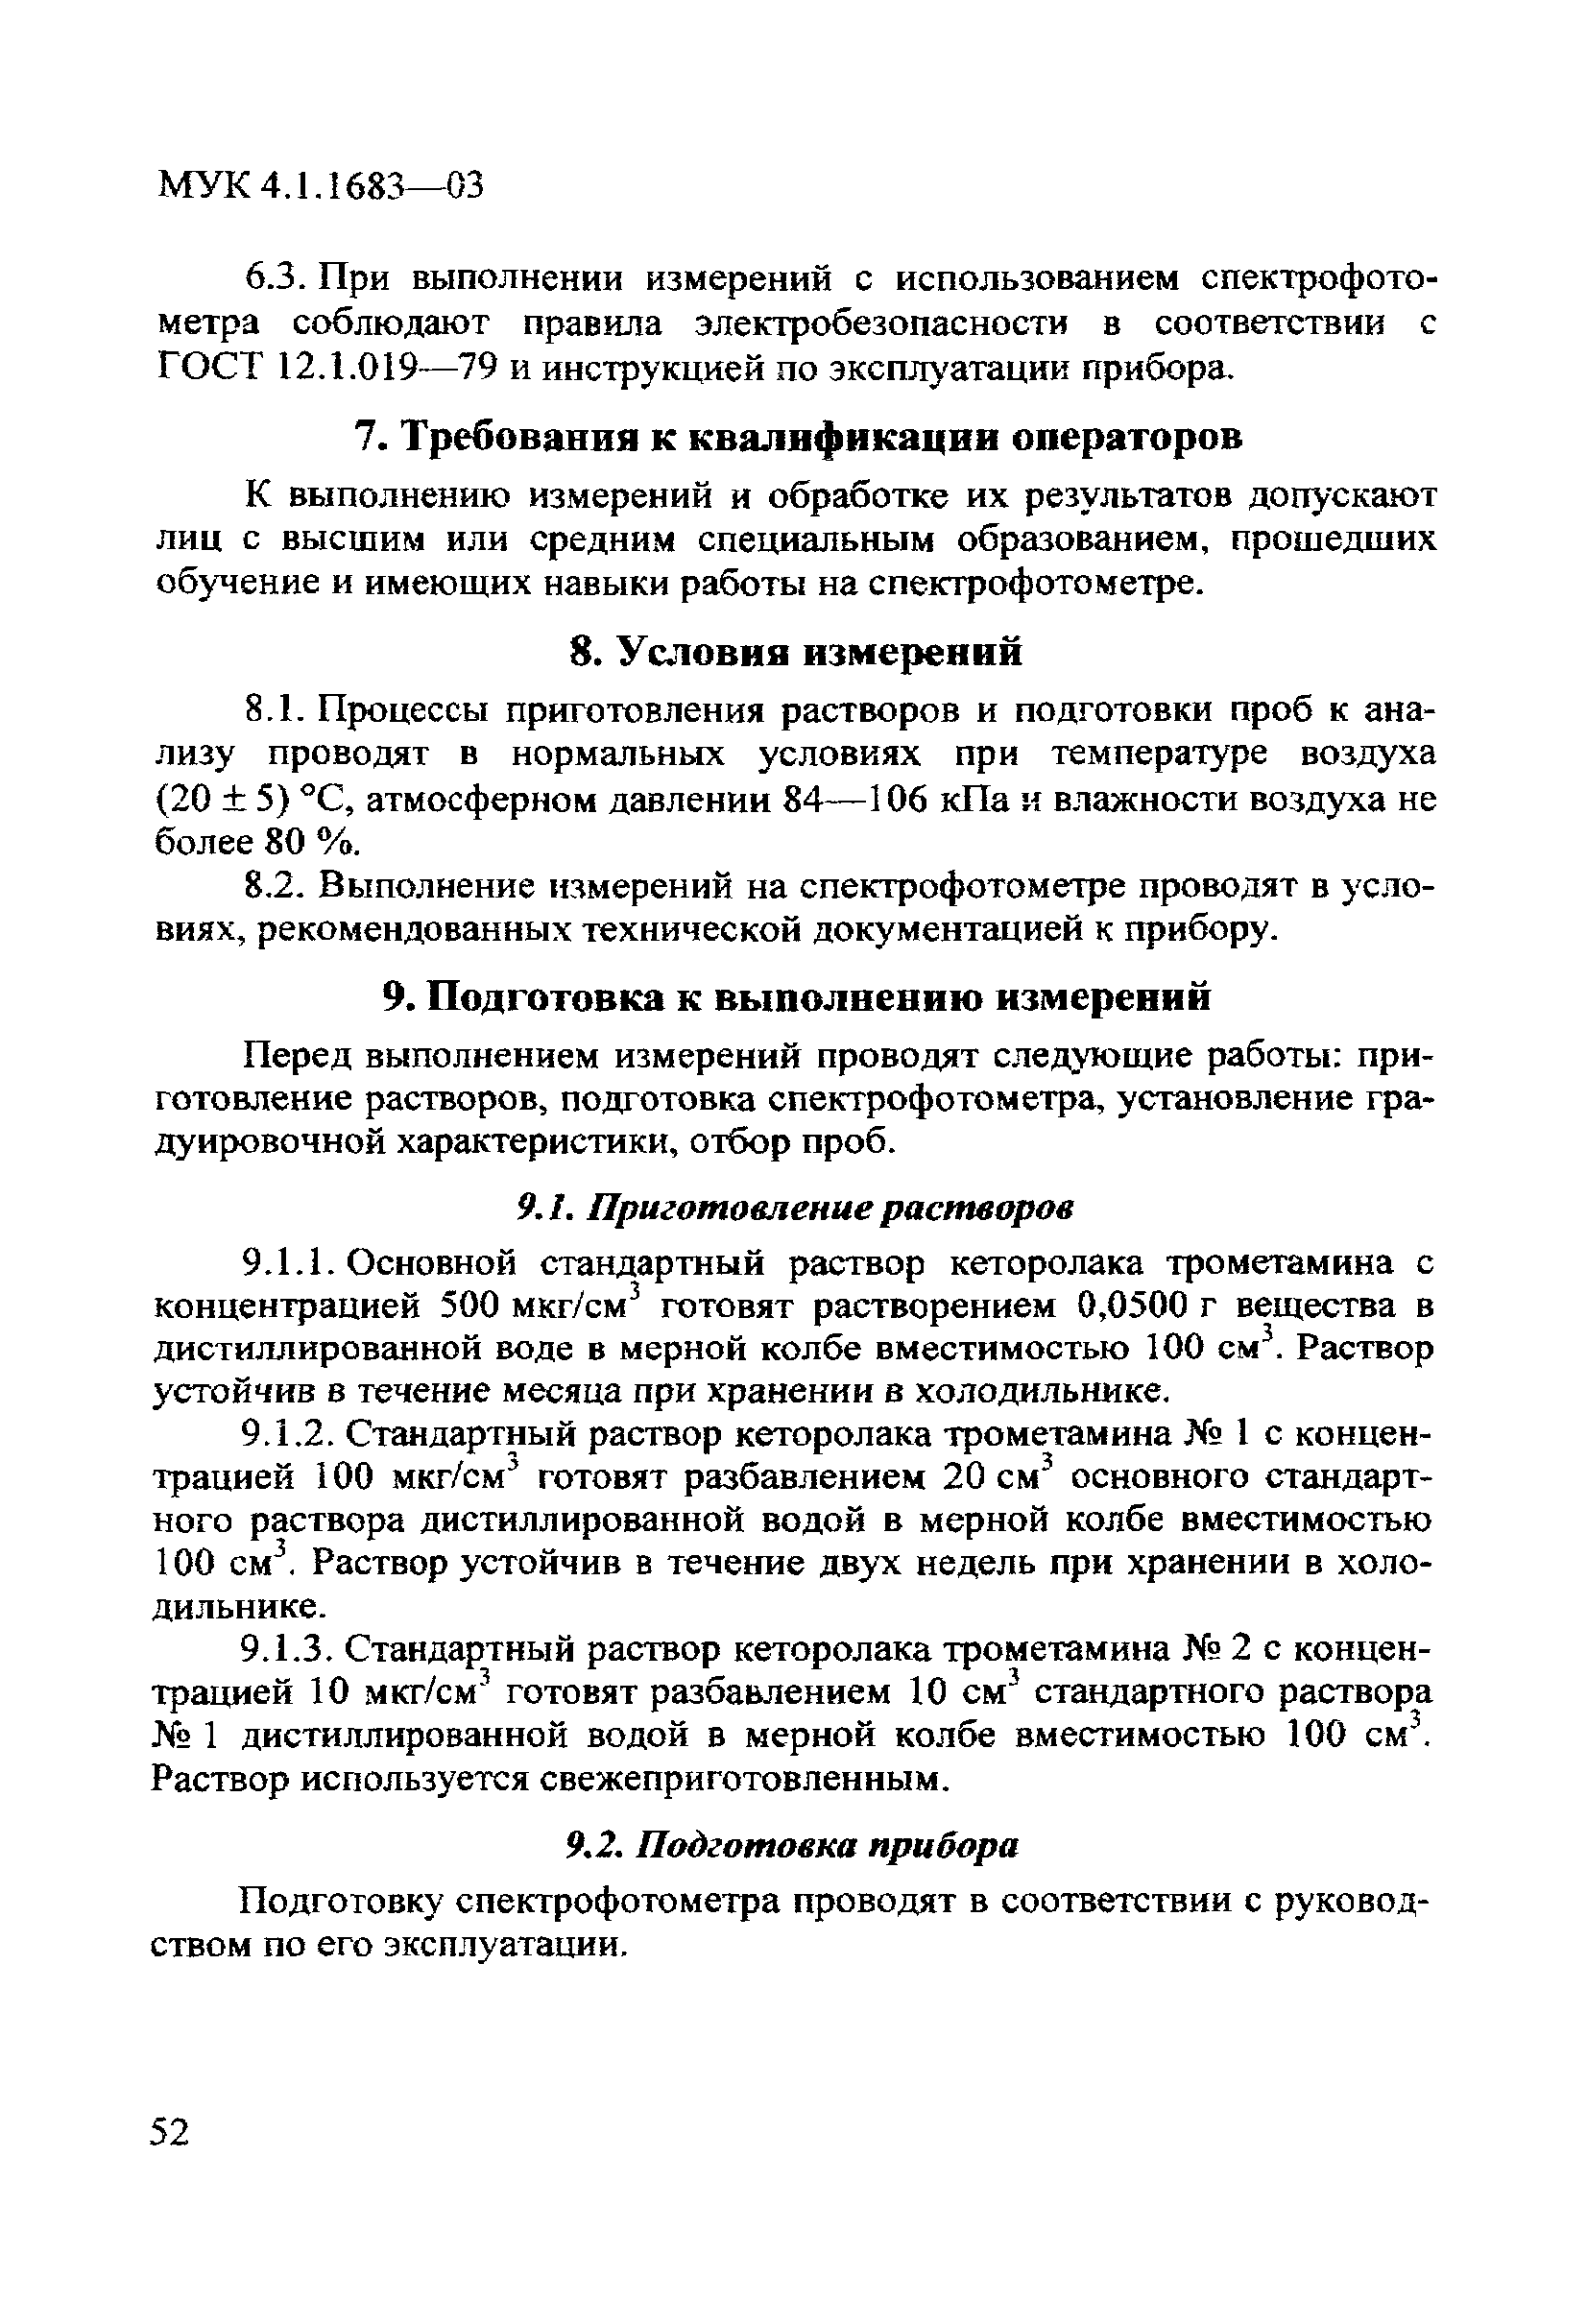 МУК 4.1.1683-03